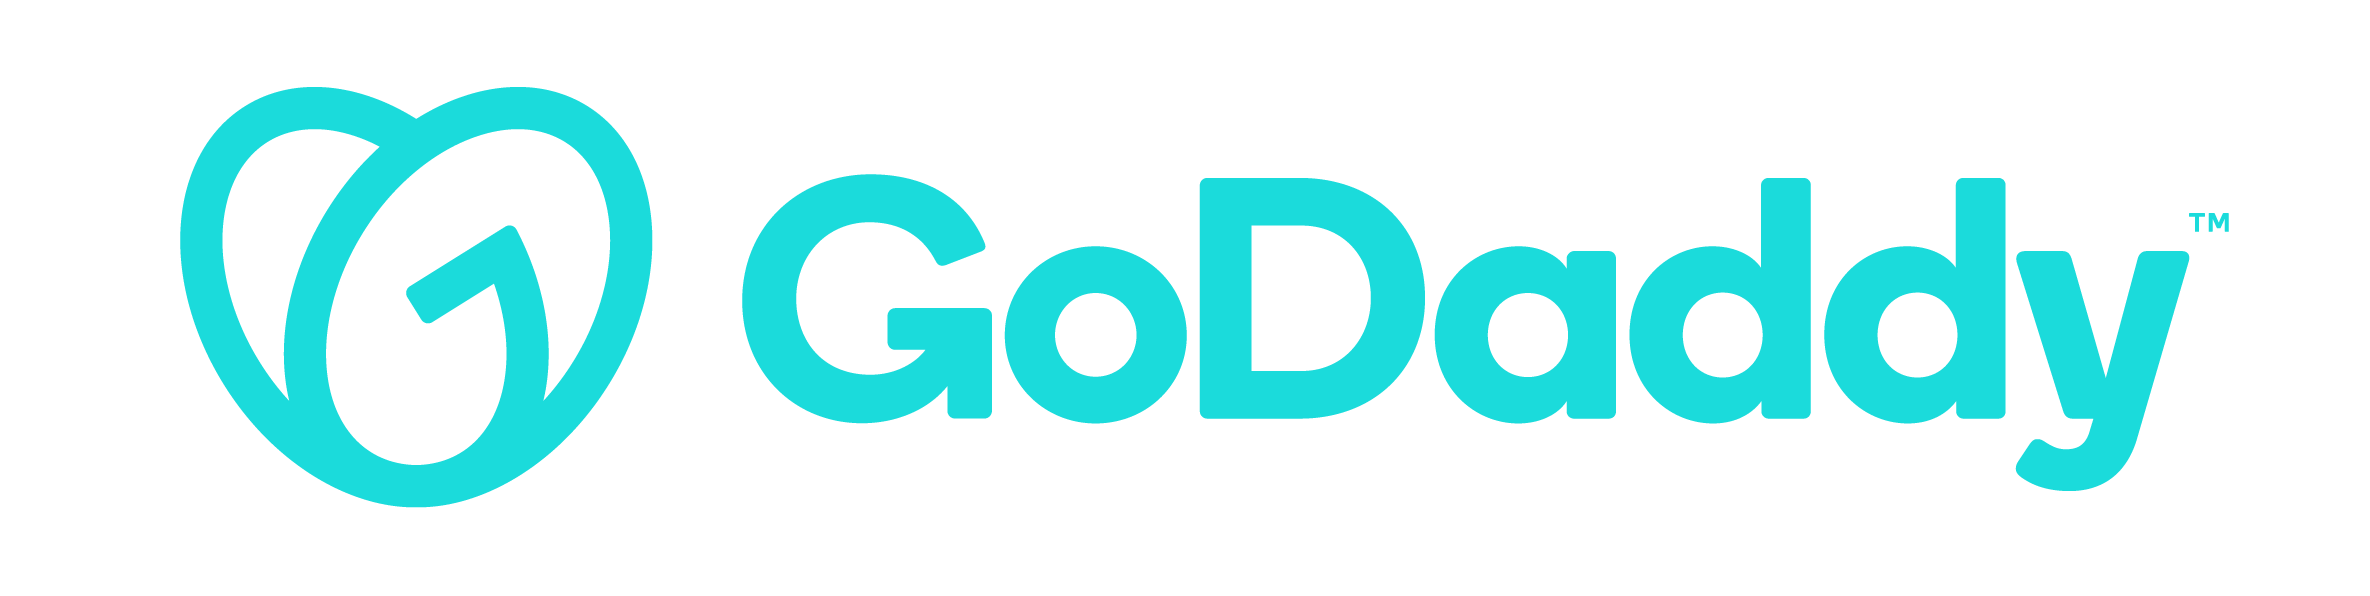 GoDaddy, seyahat ve konaklama sektörü için yaz tatili sezonuna yönelik dört dijital pazarlama ipucu paylaştı